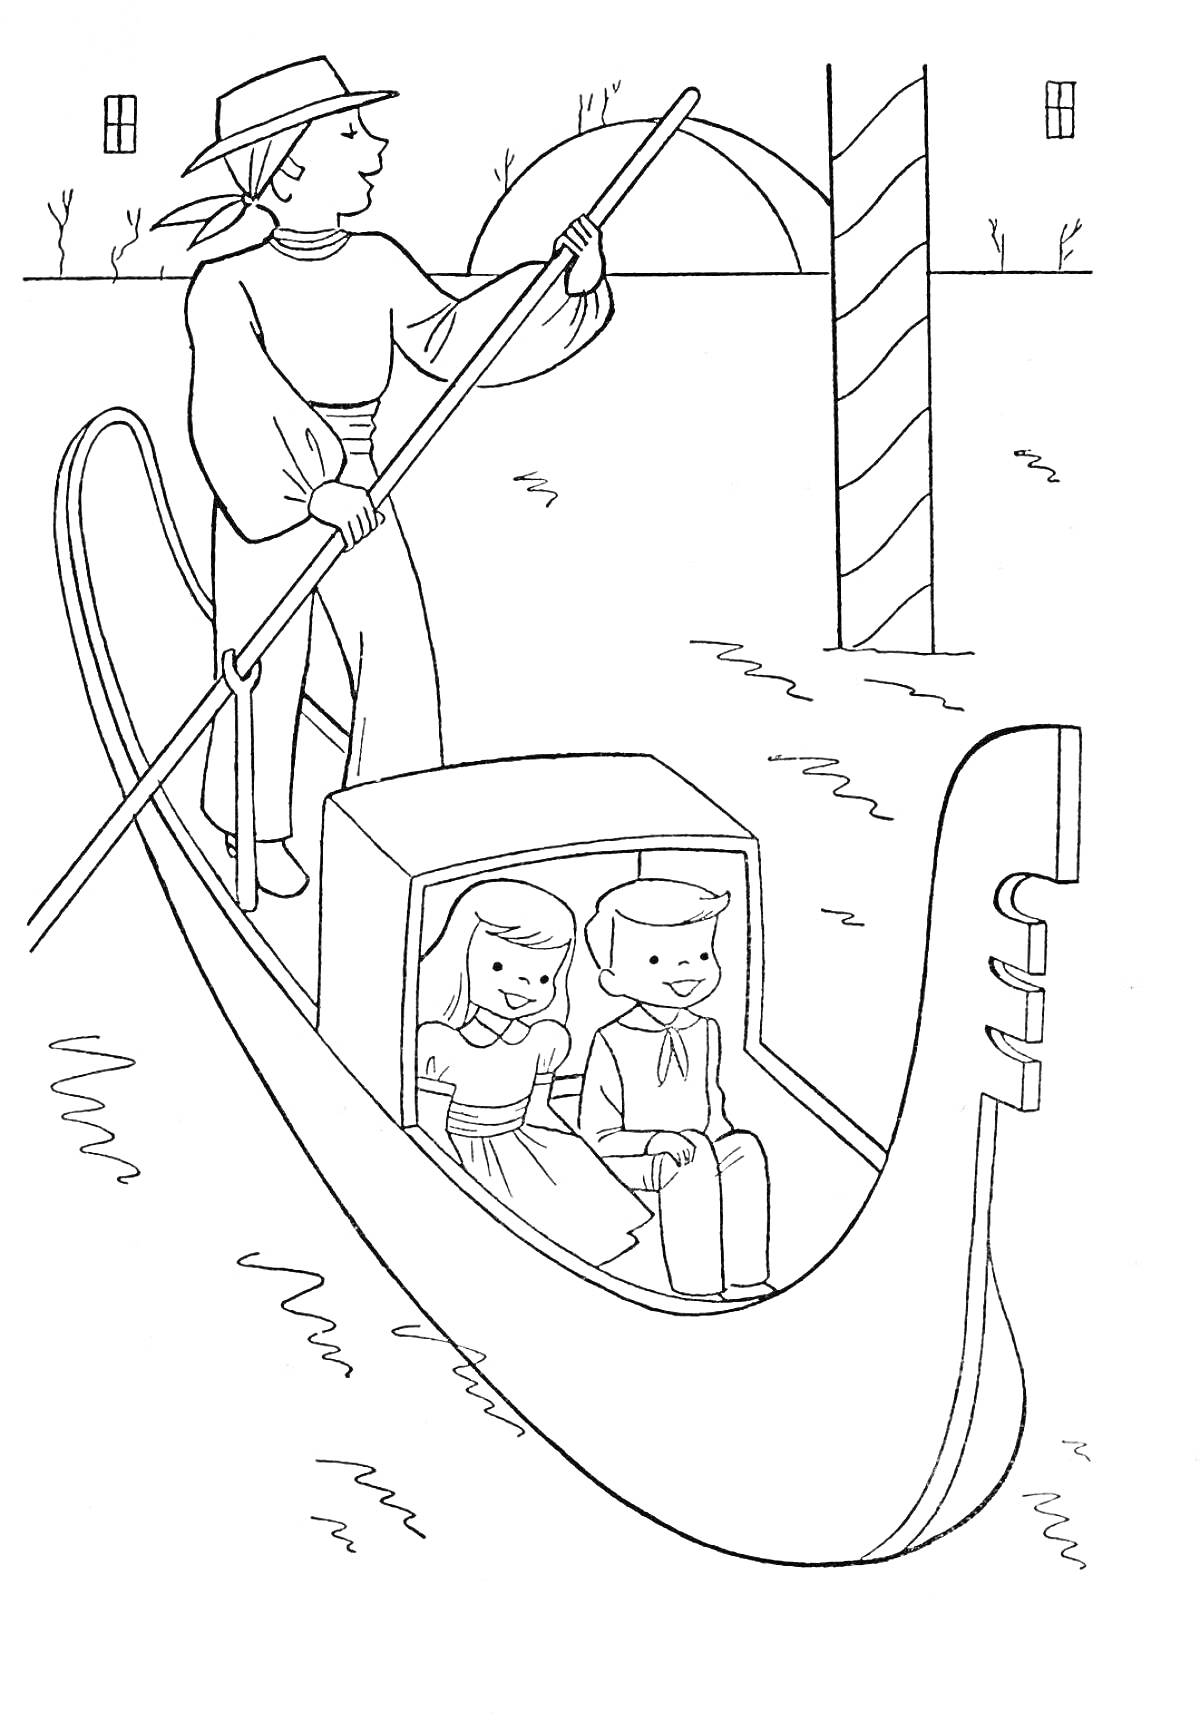 Река с гондолой и людьми - мужчина управляет гондолой, в которой сидят два ребенка, фон составляют мост и здания.